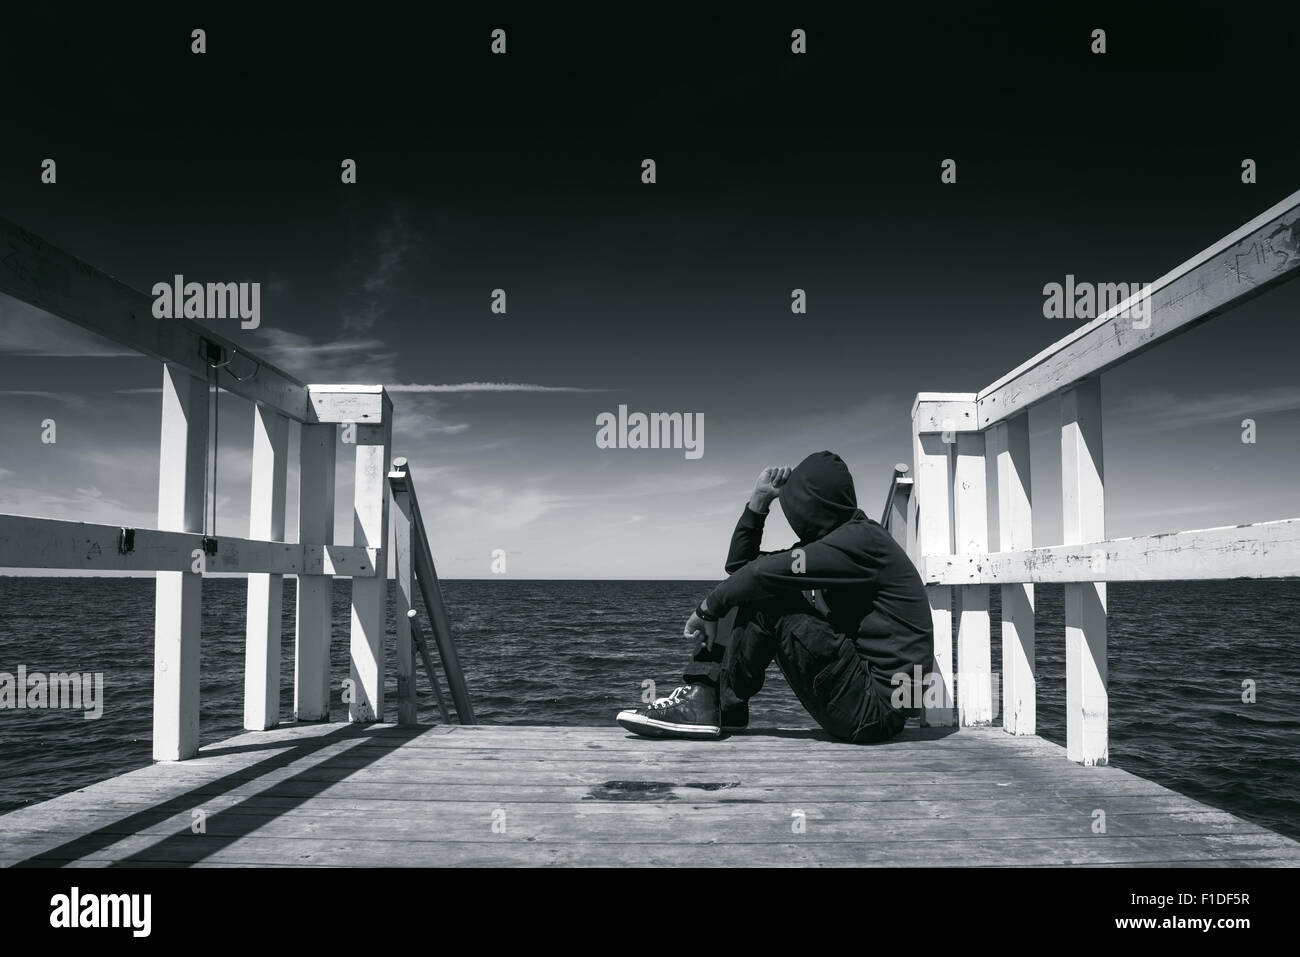 Solo hombre sentado en el borde del muelle de madera, mirando el agua - la desesperanza, la soledad, la alienación concepto, en blanco y negro Foto de stock